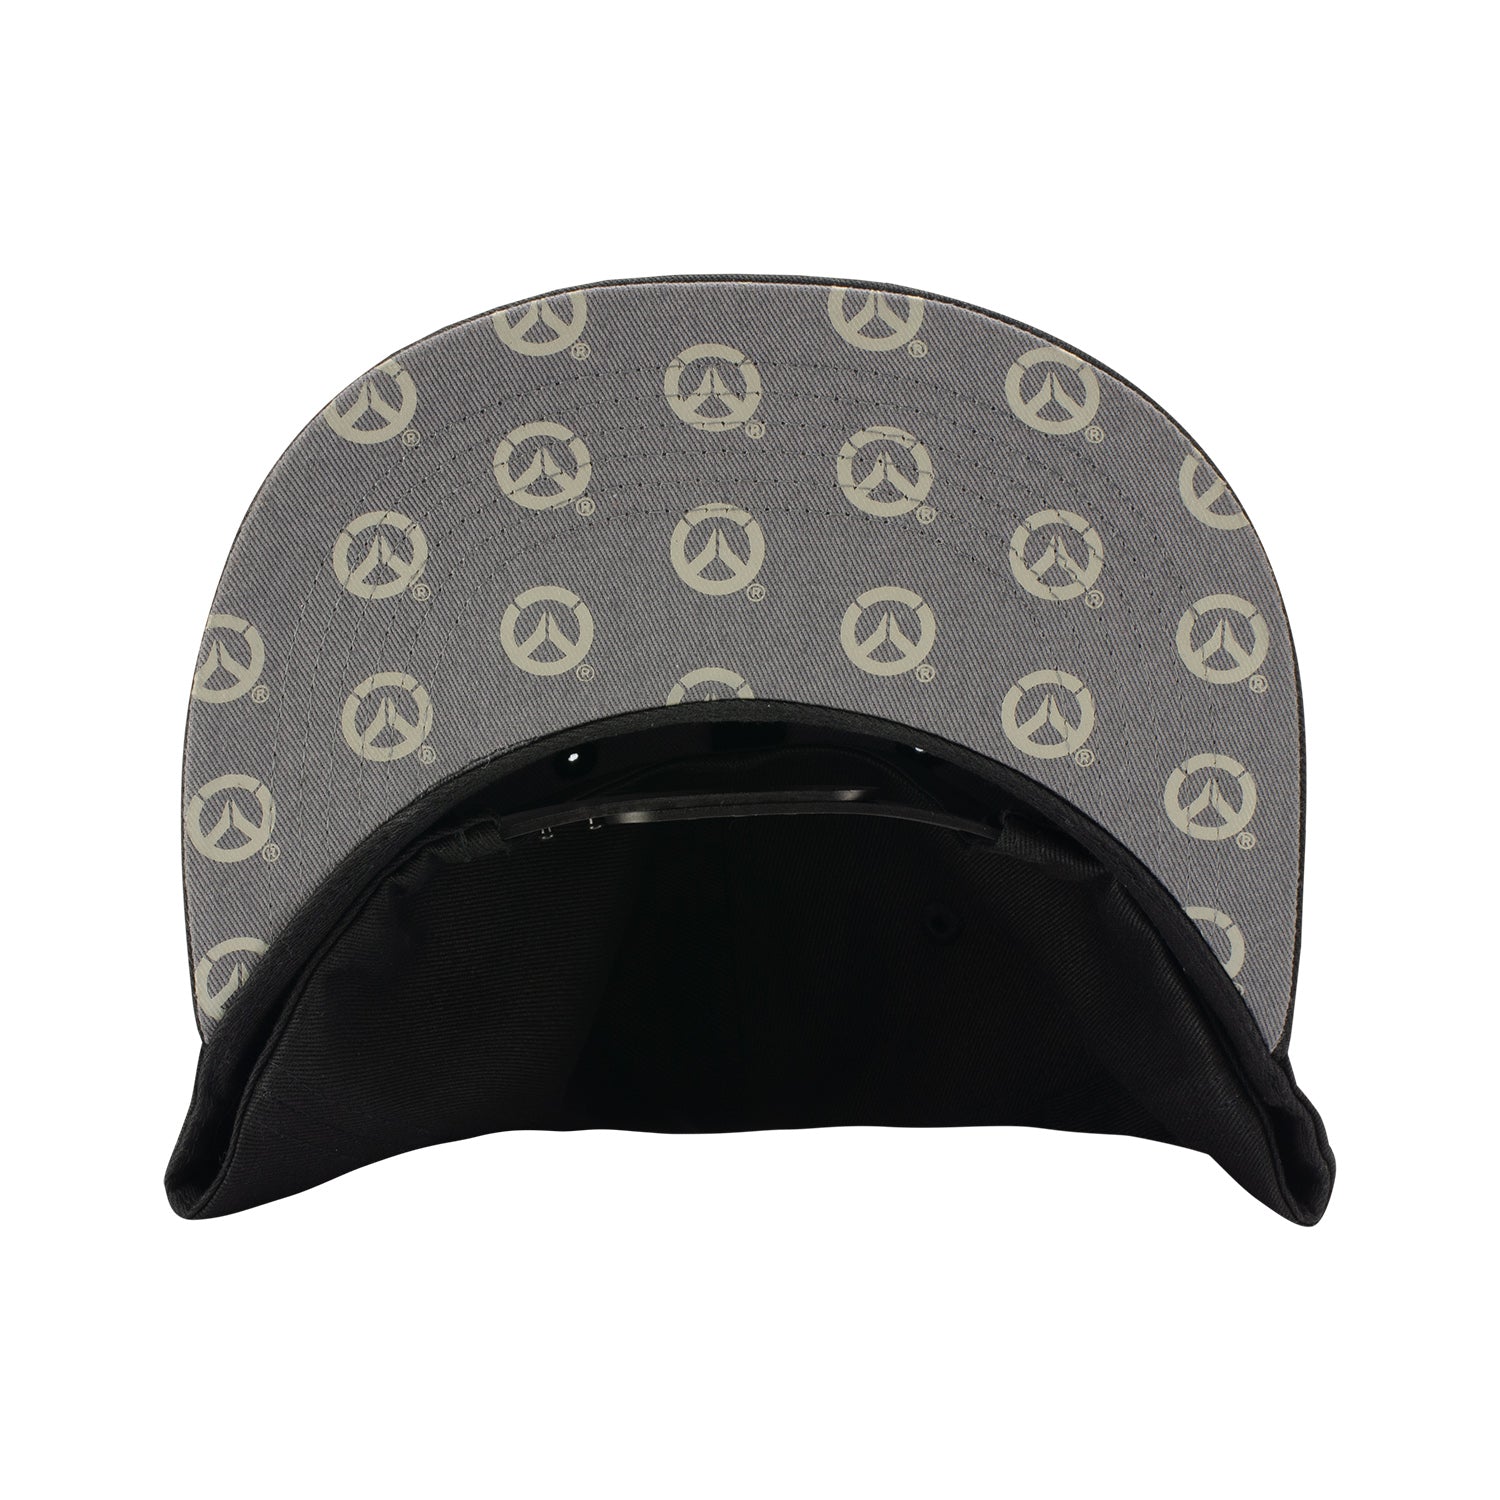 Overwatch 2 Black Flatbill Snapback Hat - Under Brim View with Overwatch Logo Design